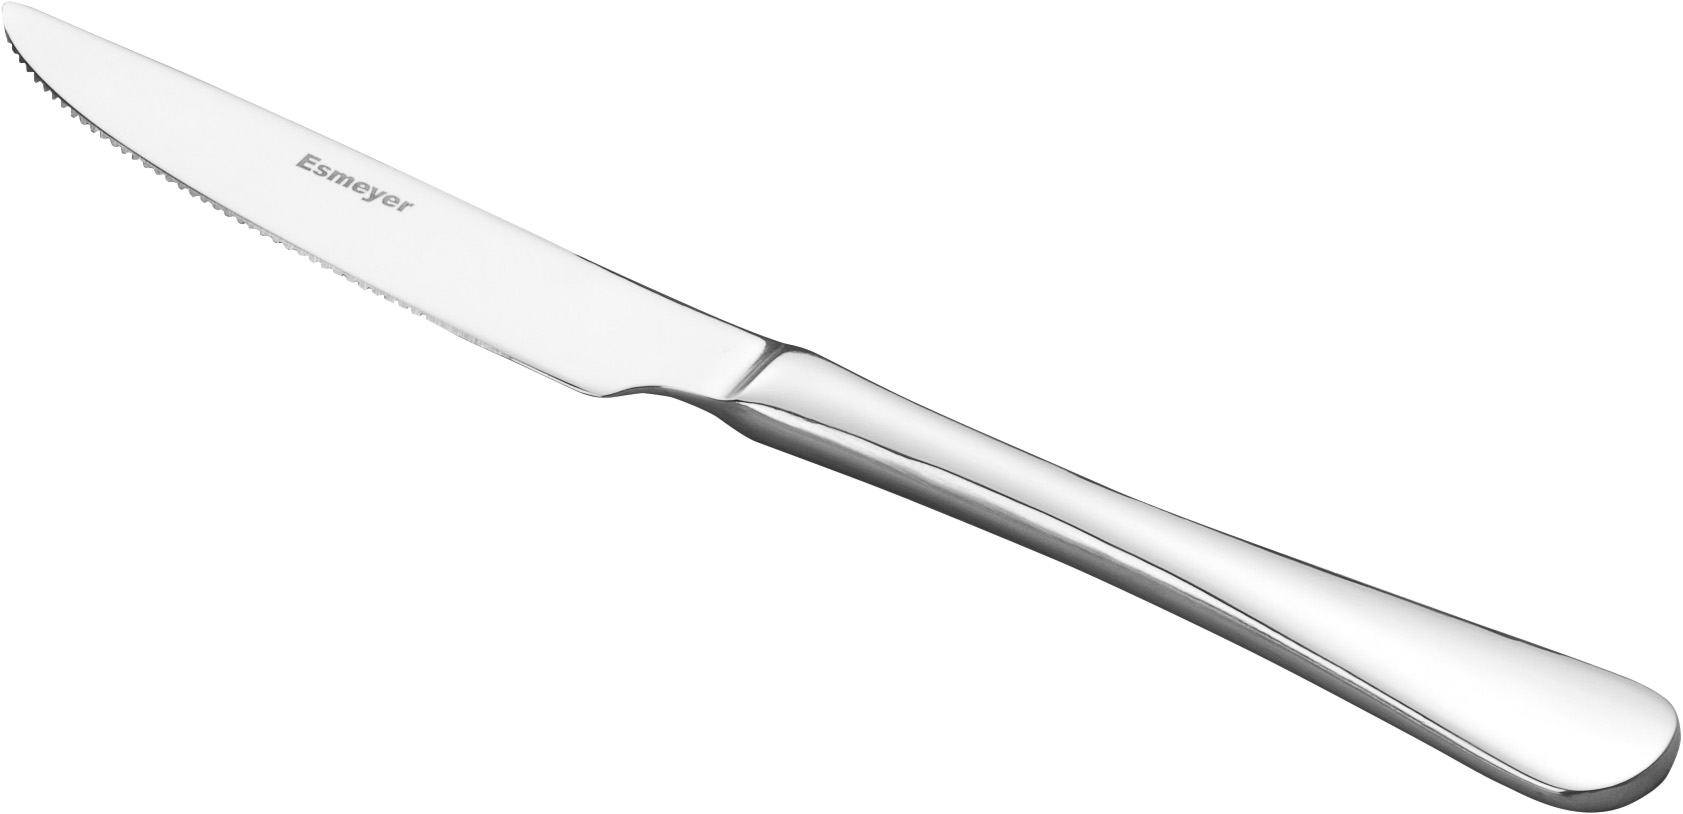 Steakmesser / Pizzamesser SYLVIA, Chrom-Stahl, poliert, Länge: 22,5 cm. Mit Wellenschliff.